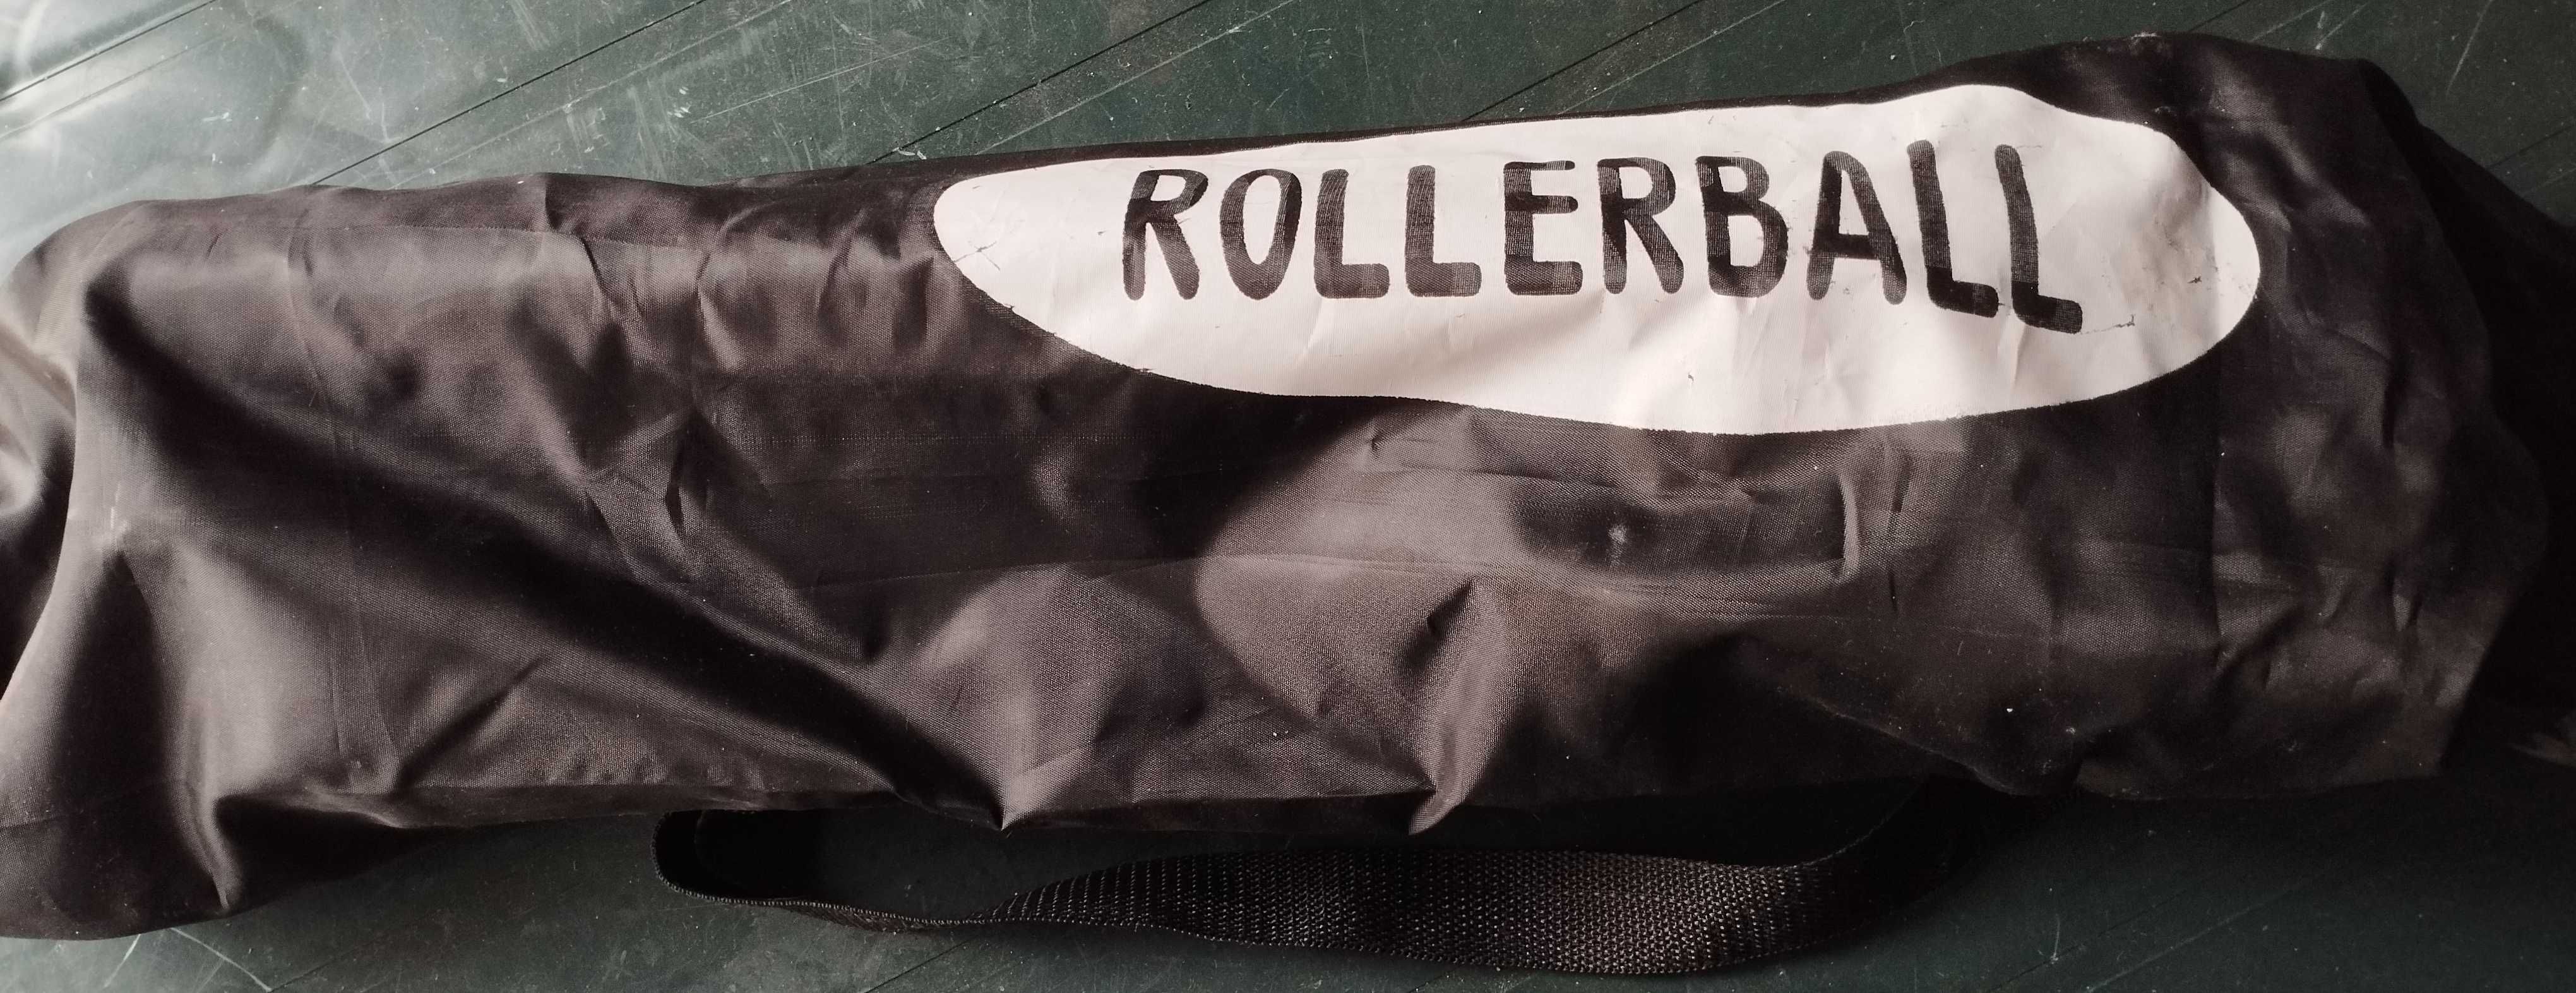 Trotinete Rollerball Dobrável de Criança com saco de transporte